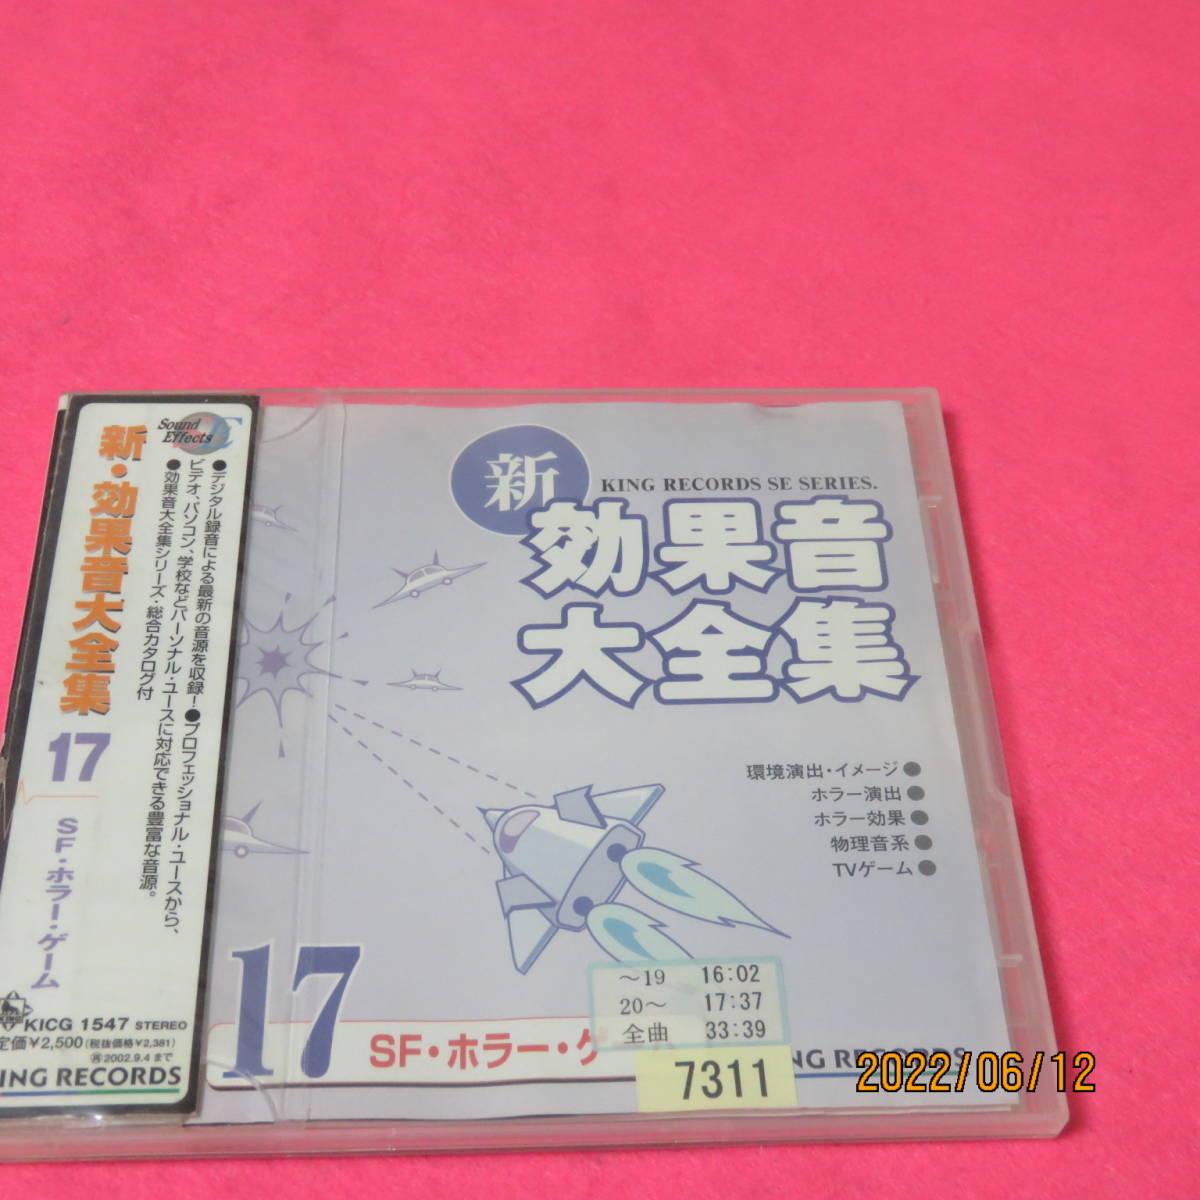 効果音大全集(17) 効果音 形式: CD